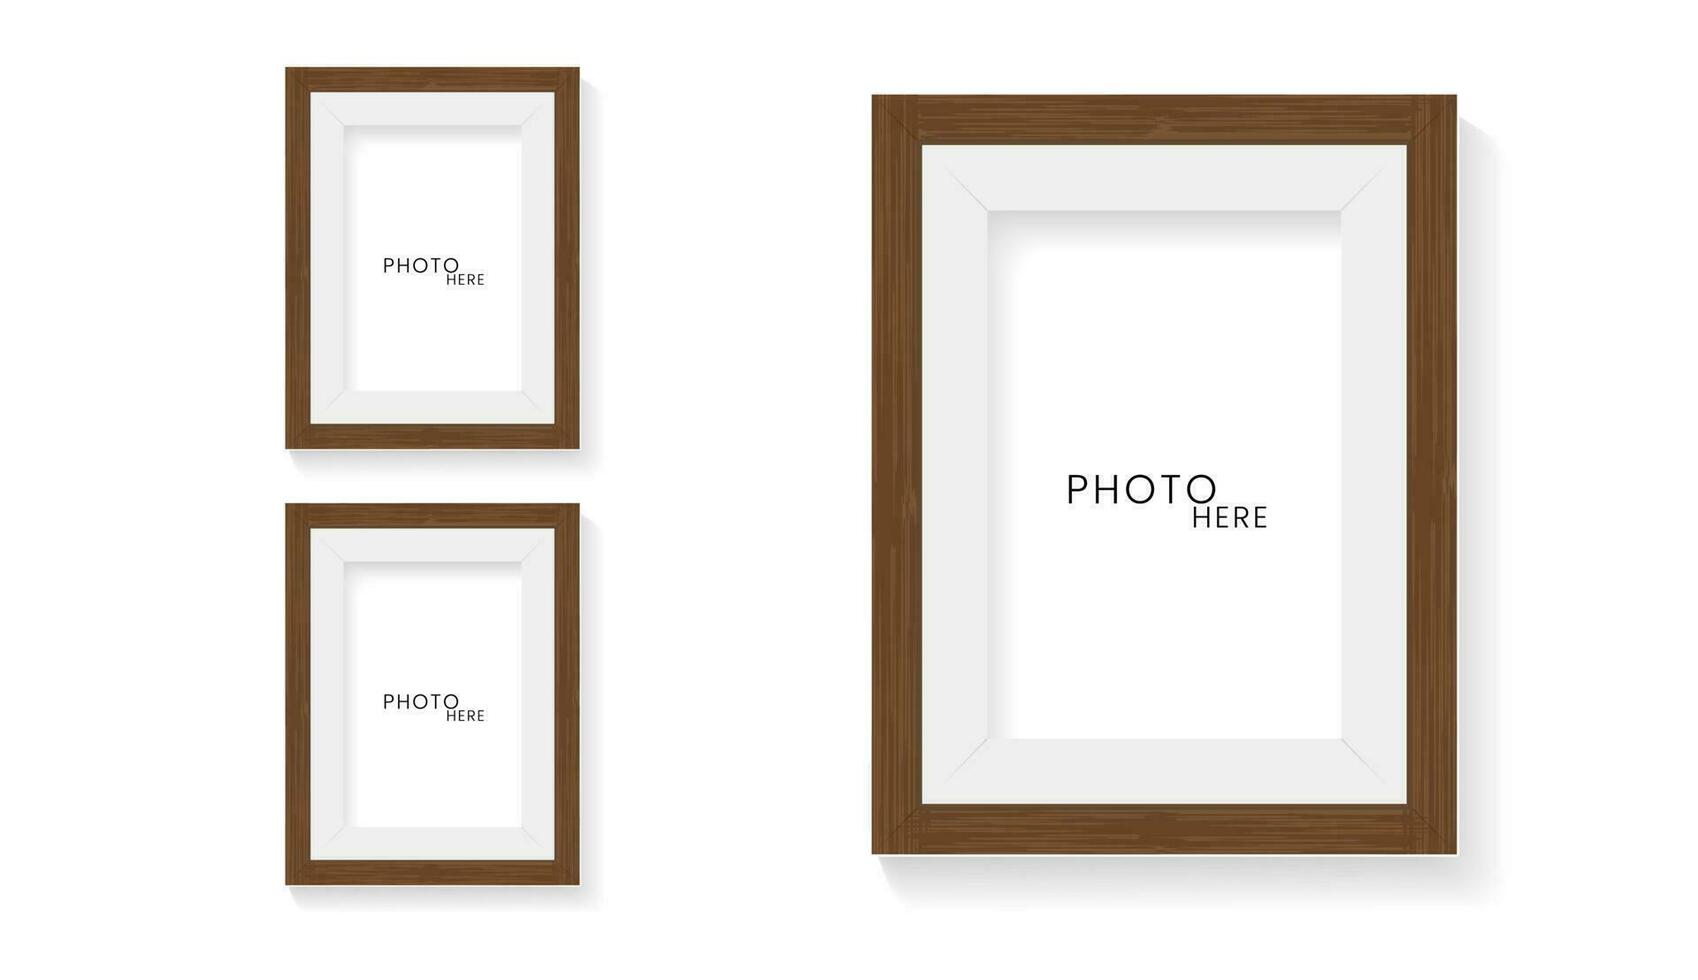 conjunto de dos marcos burlarse de arriba en aislado blanco pared diseño, 2 foto marcos burlarse de arriba vector ilustración